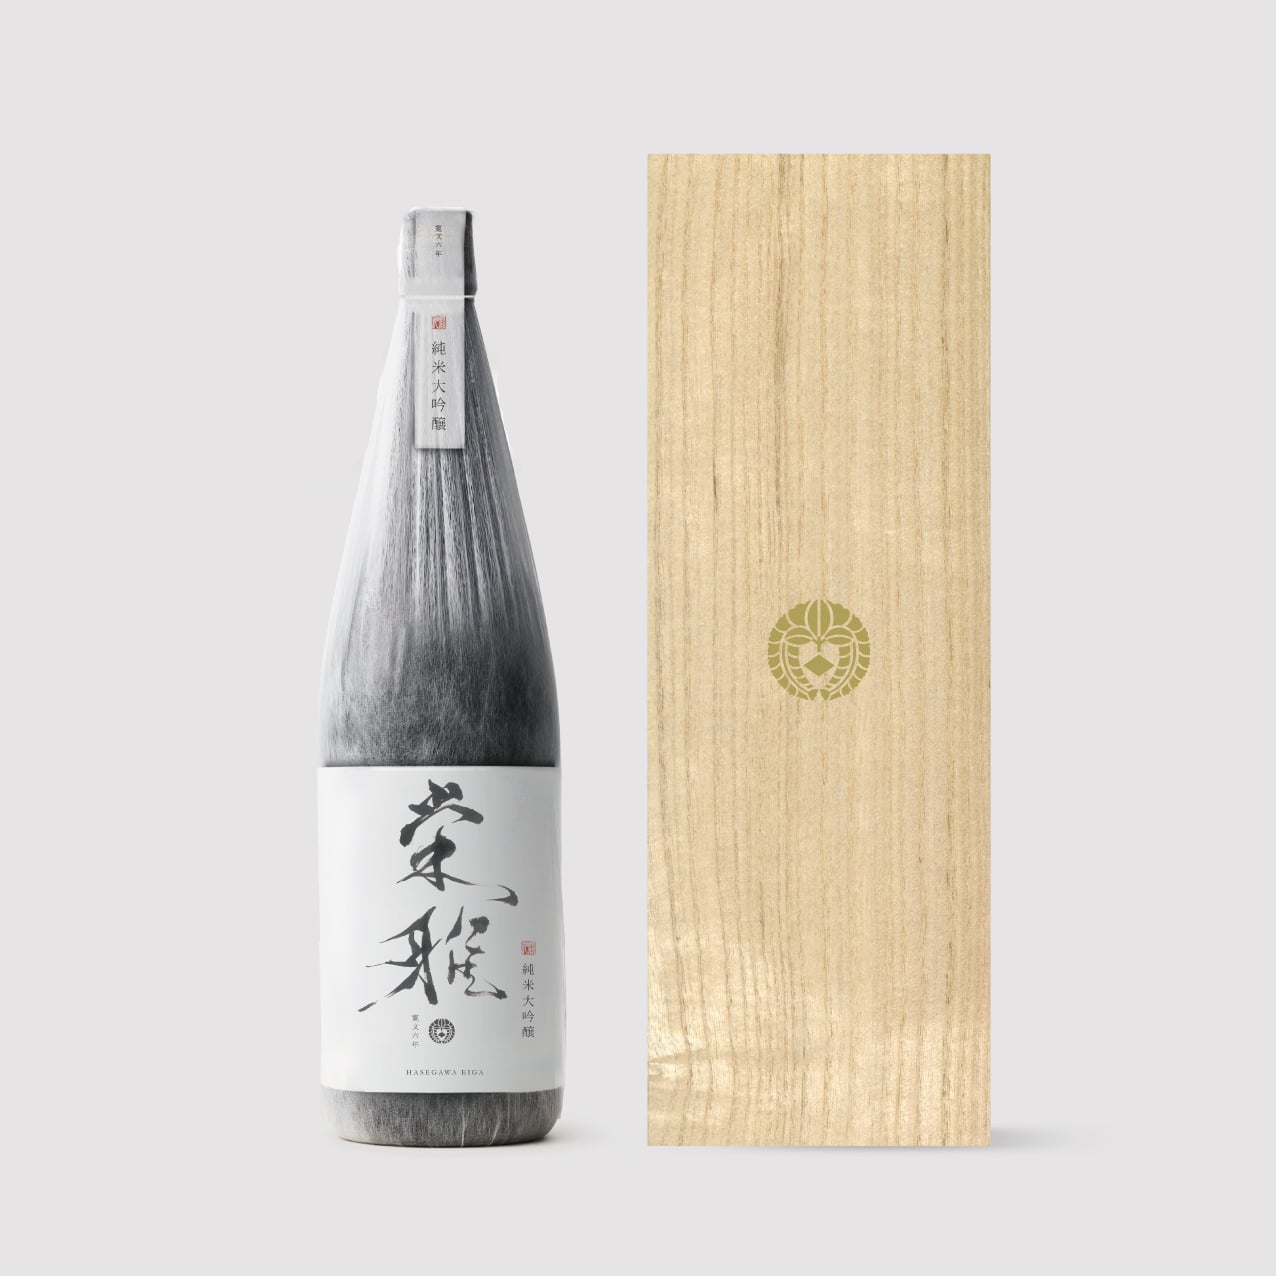 「栄雅 純米大吟醸」など５種類の日本酒を飲み比べることができる。